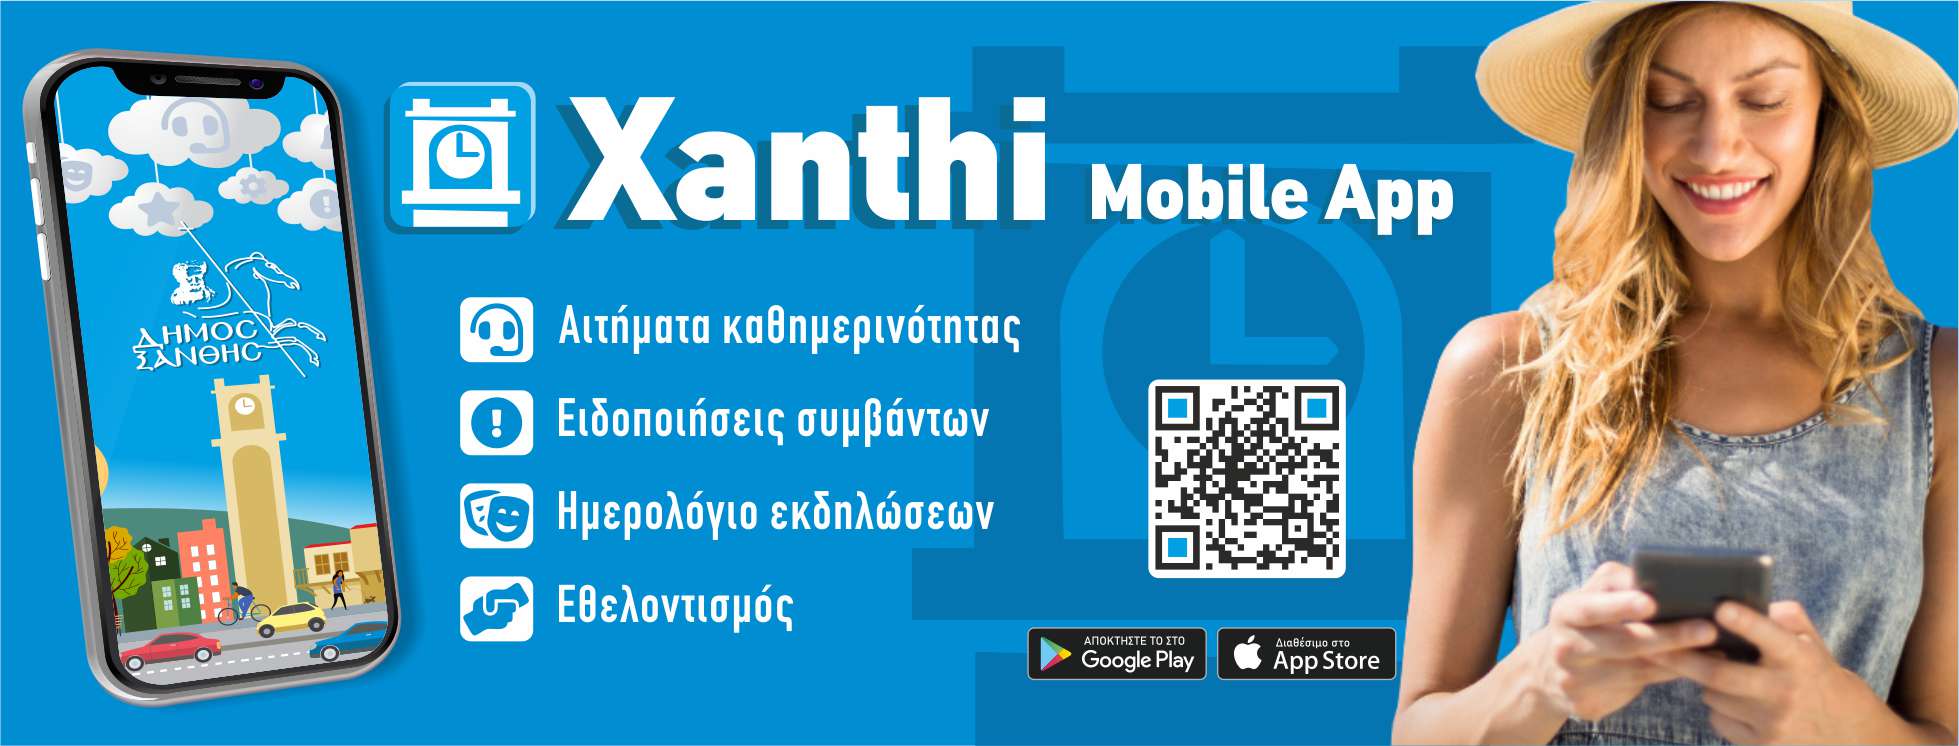 Xanthi Mobile App